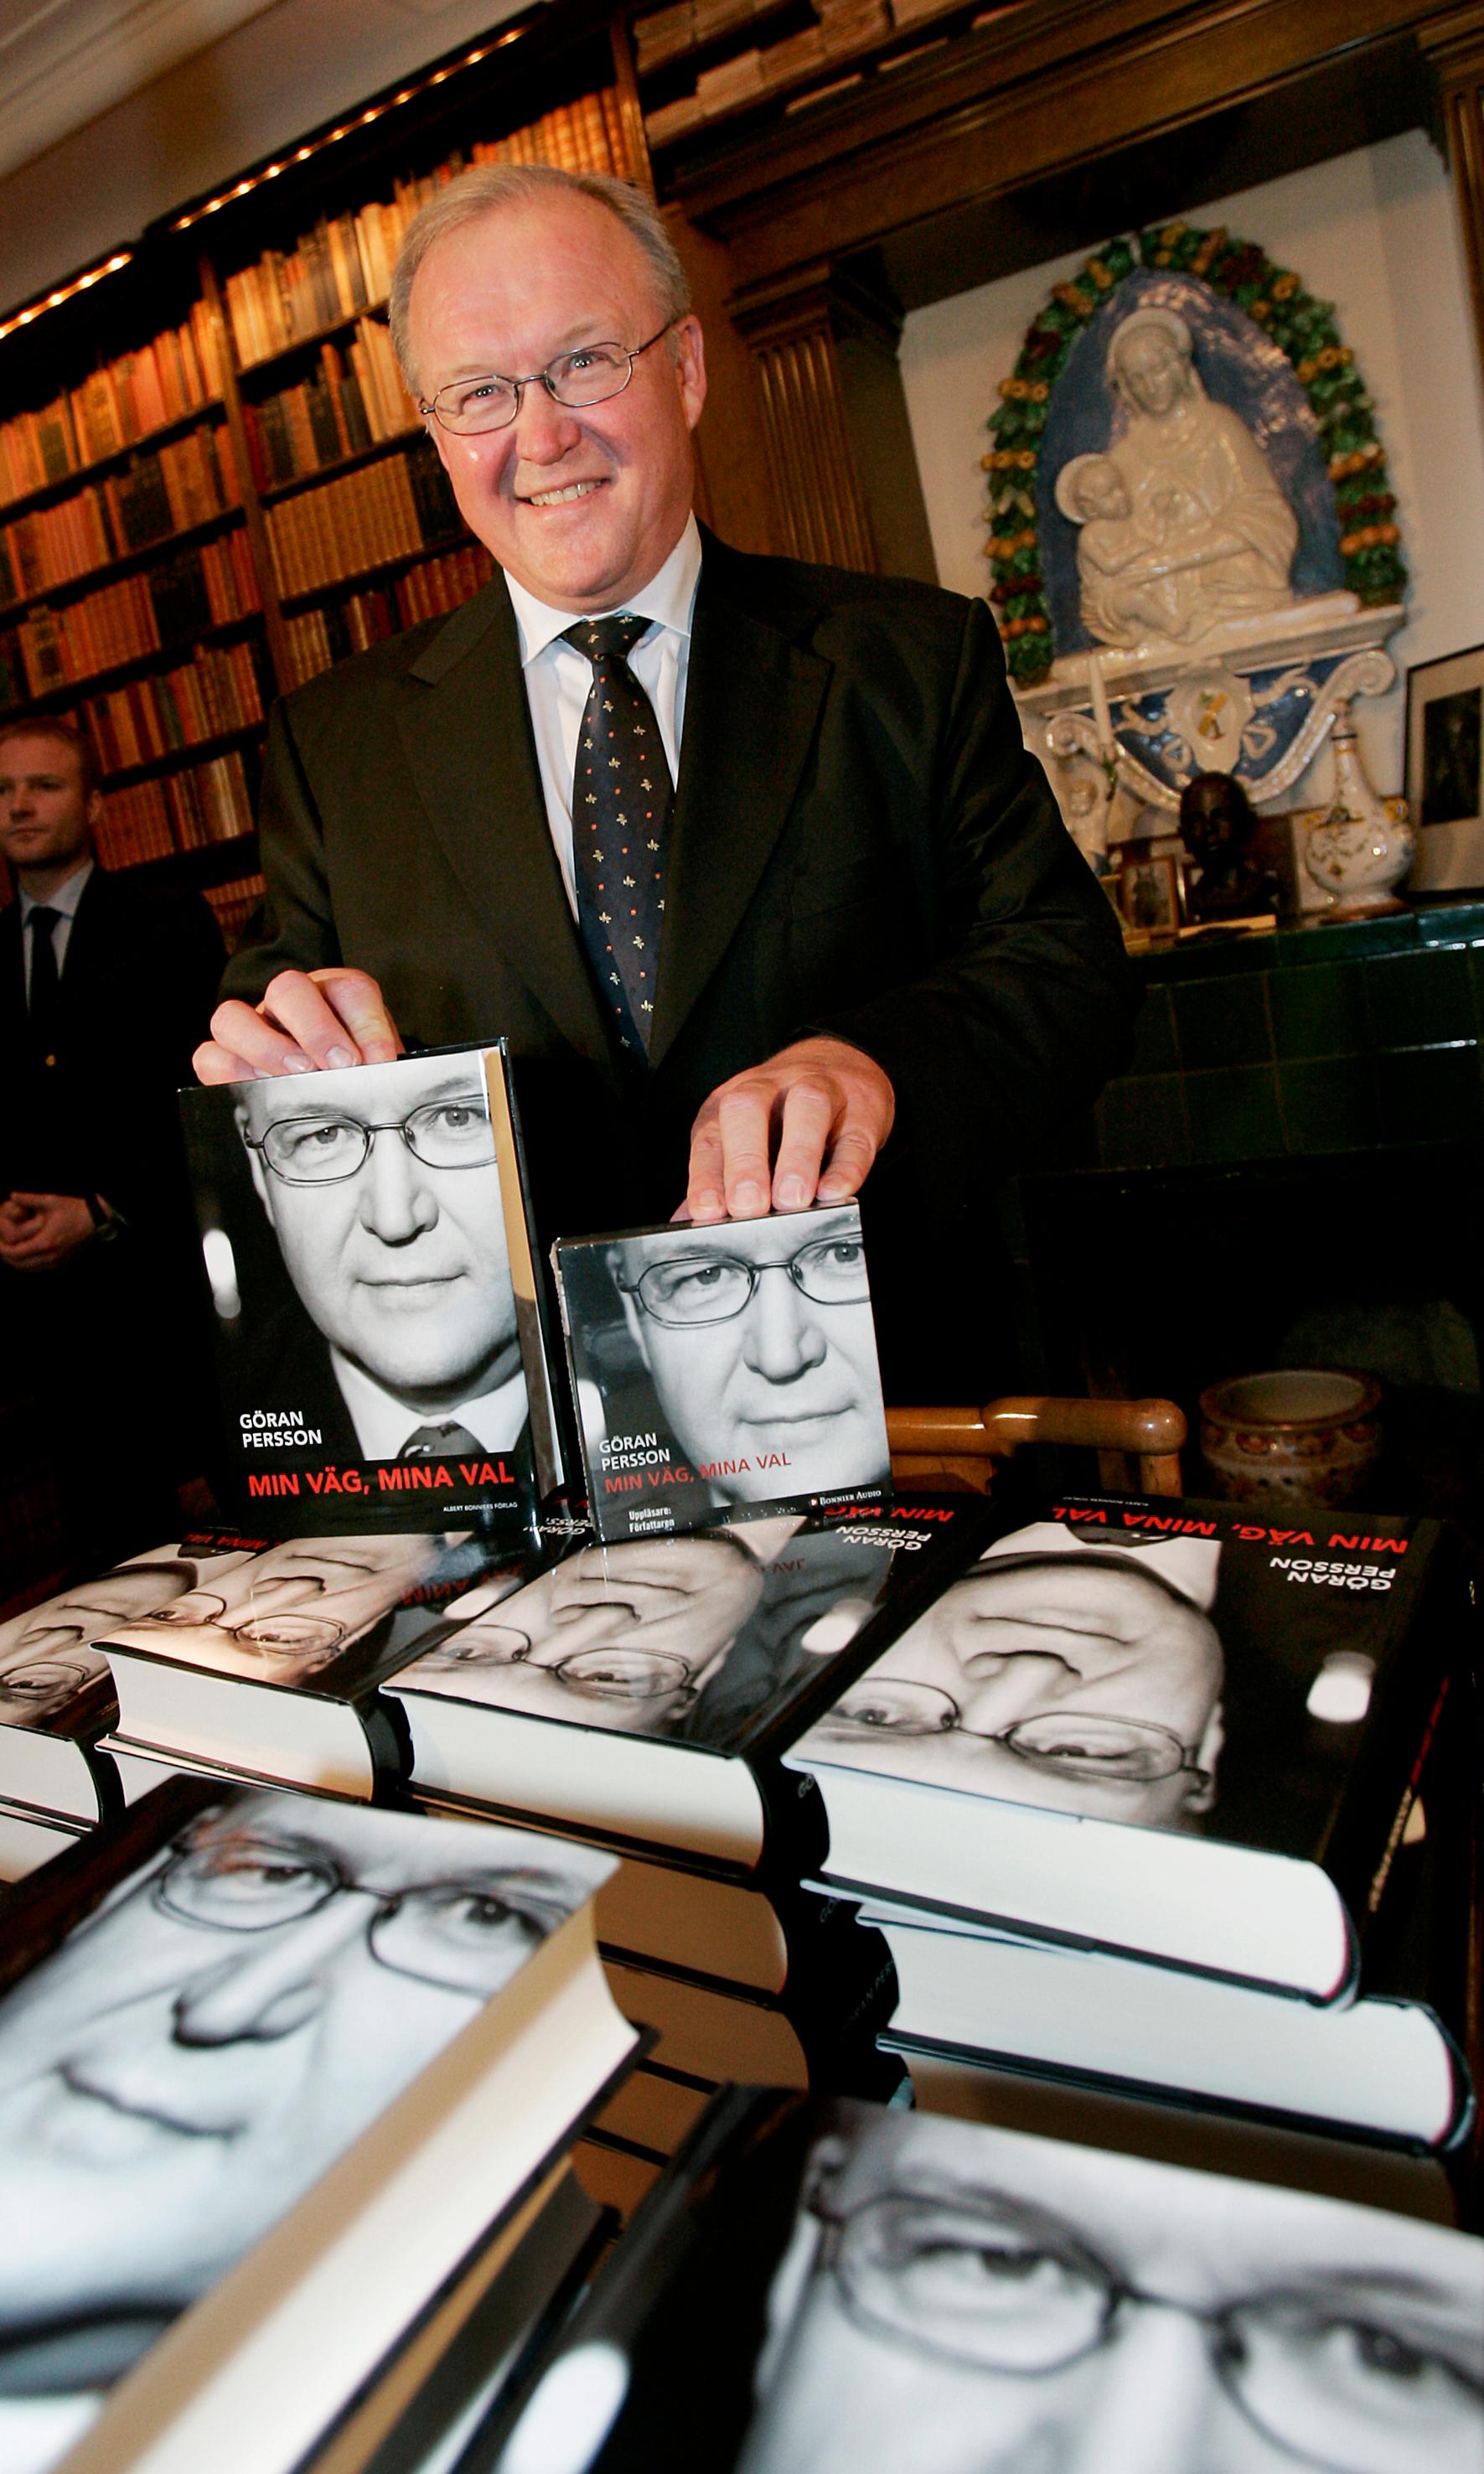 Förre socialdemokratiske statsministern Göran Persson när han presenterade sin bok ”Min väg, mina val” vid en pressträff i Stockholm.